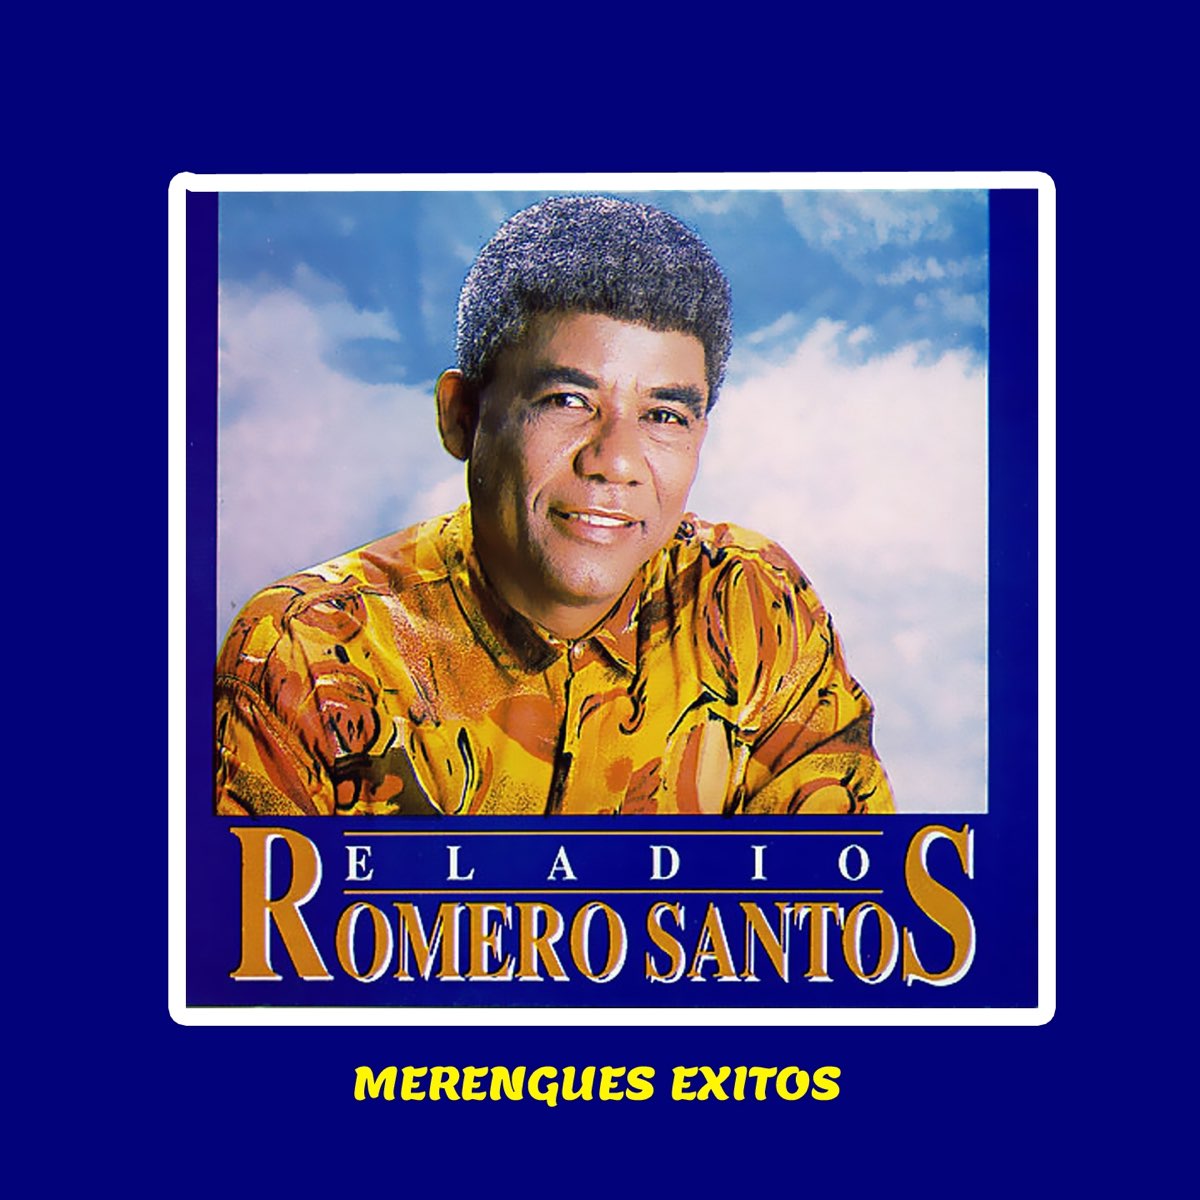 Merengues Éxitos” álbum De Eladio Romero Santos En Apple Music 